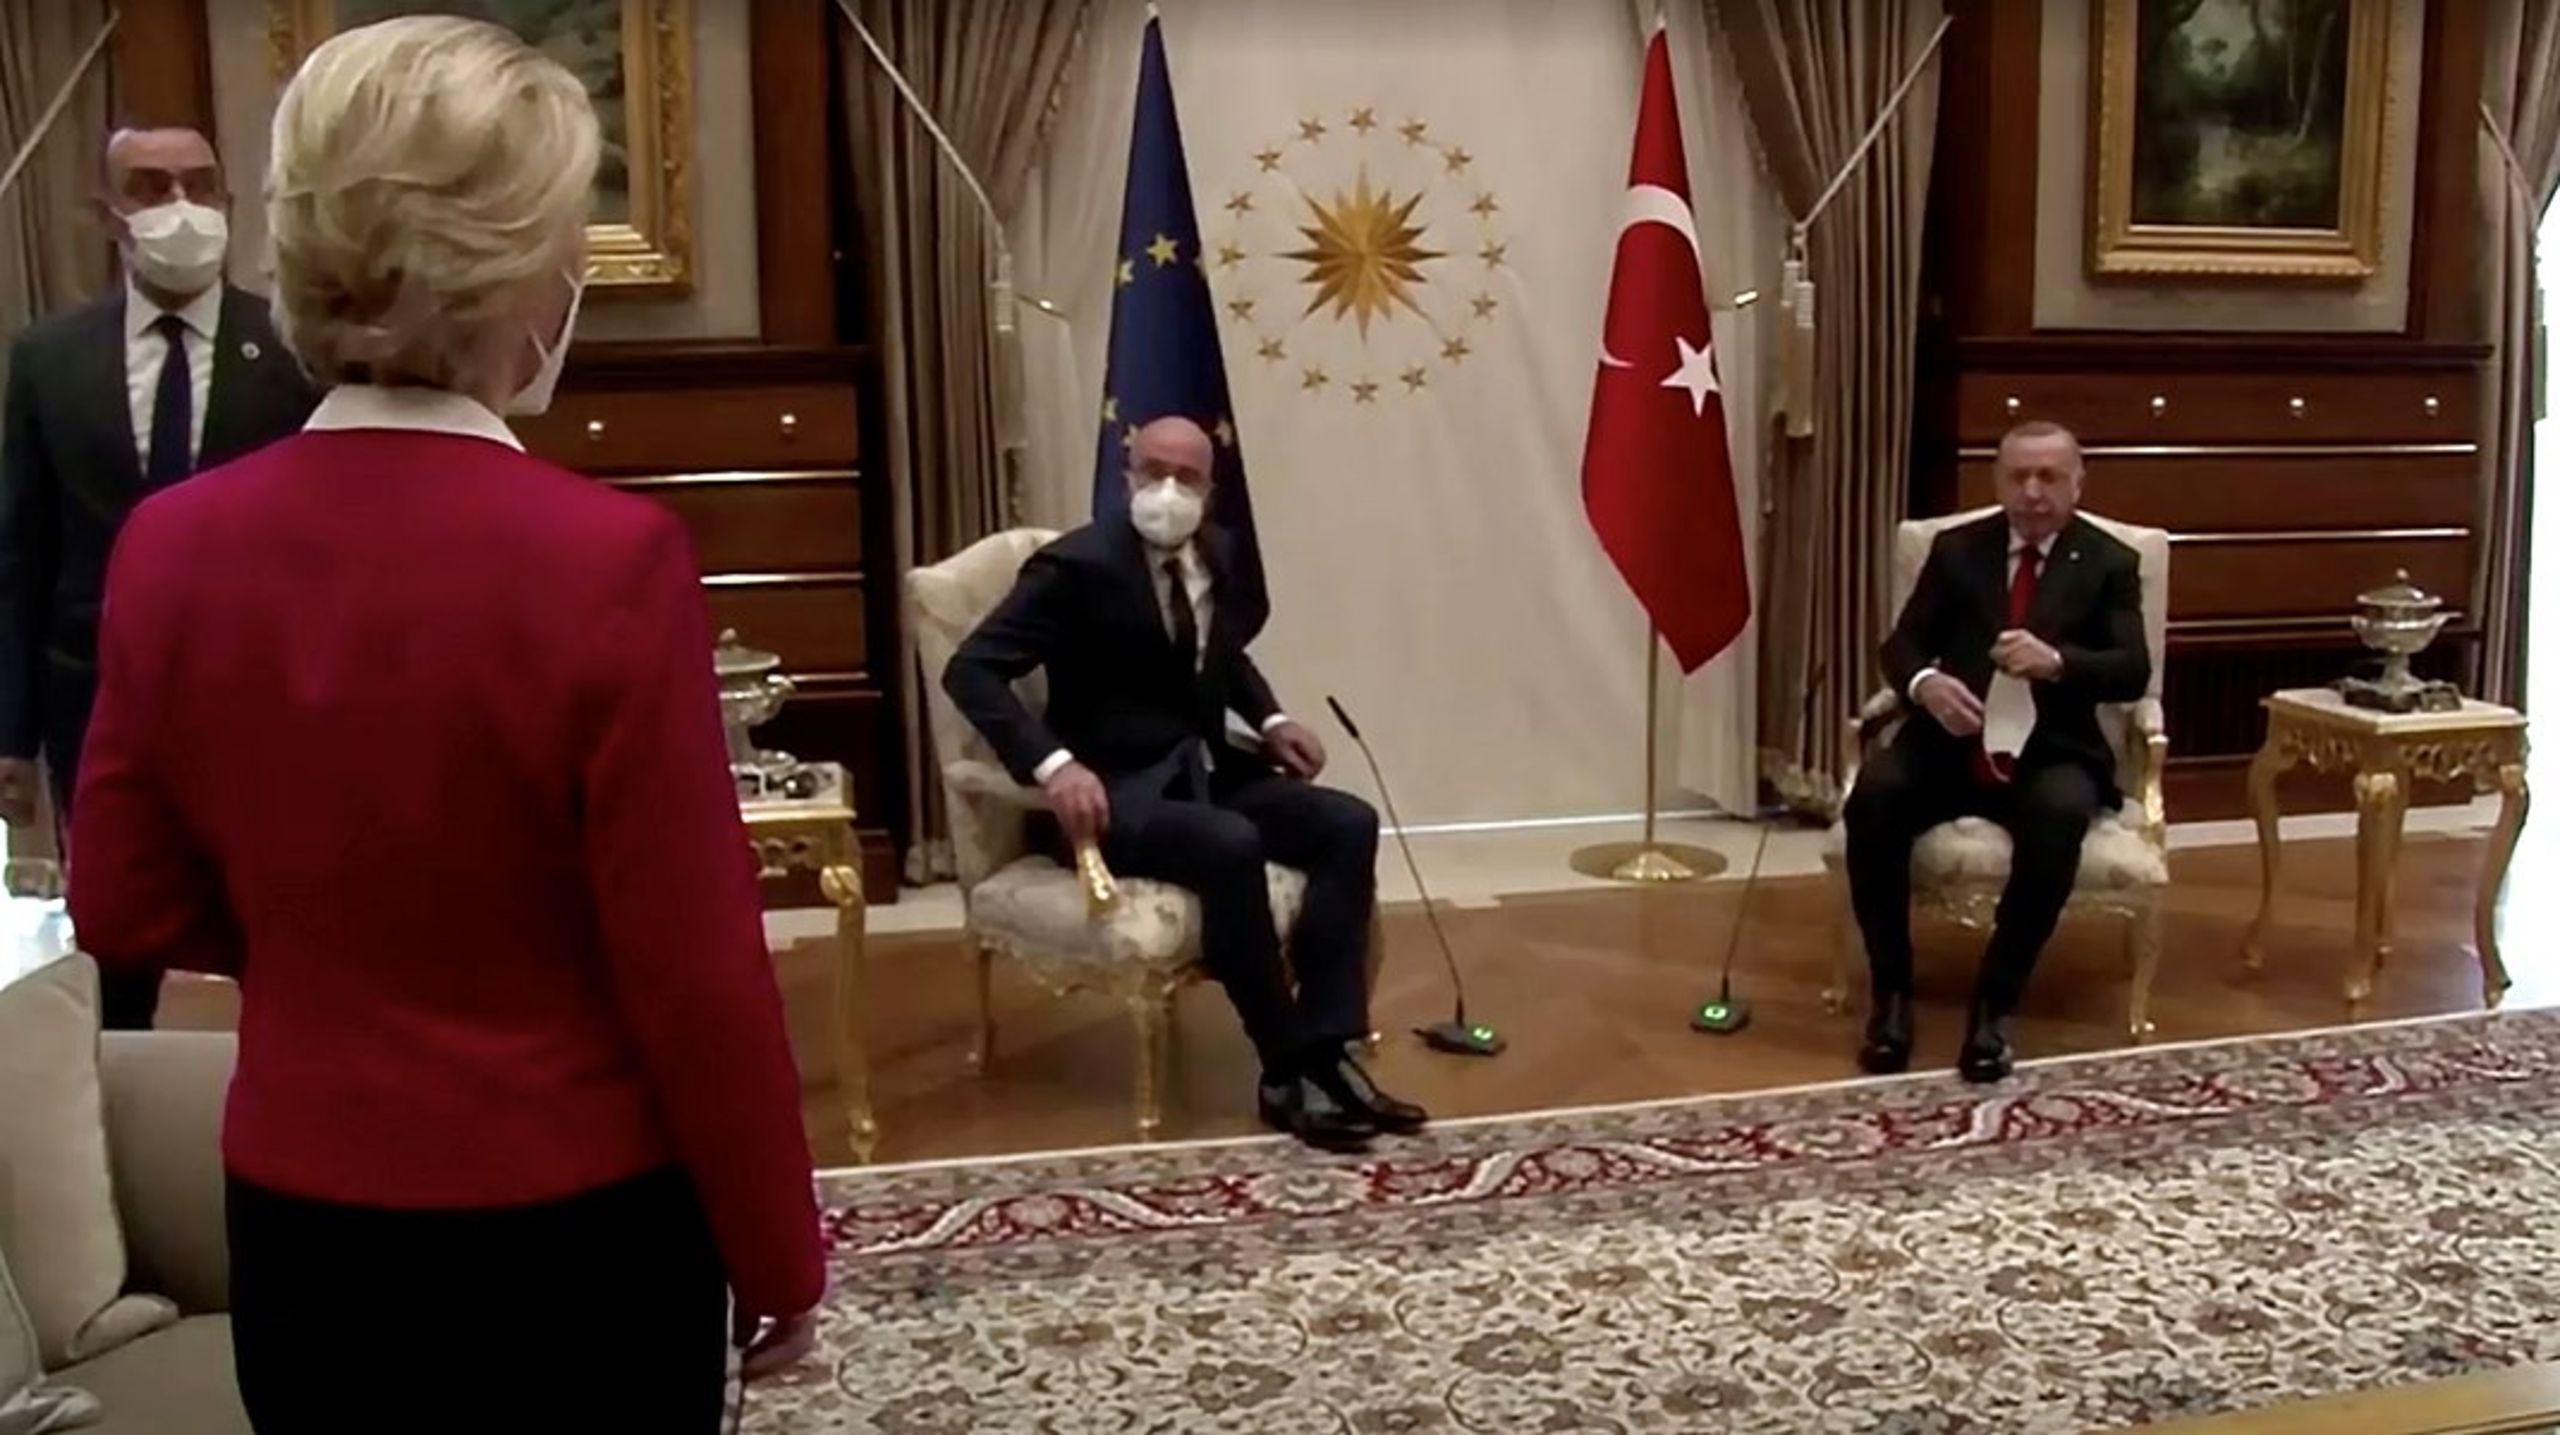 Tyrkiets præsident Recep Tayyip Erdoğan og EU-rådsformand Charles Michel satte sig til rette i to stole, mens kommissionsformand Ursula von der Leyen blev henvist til en sofa et stykke væk, under et besøg i Tyrkiet tirsdag.&nbsp;